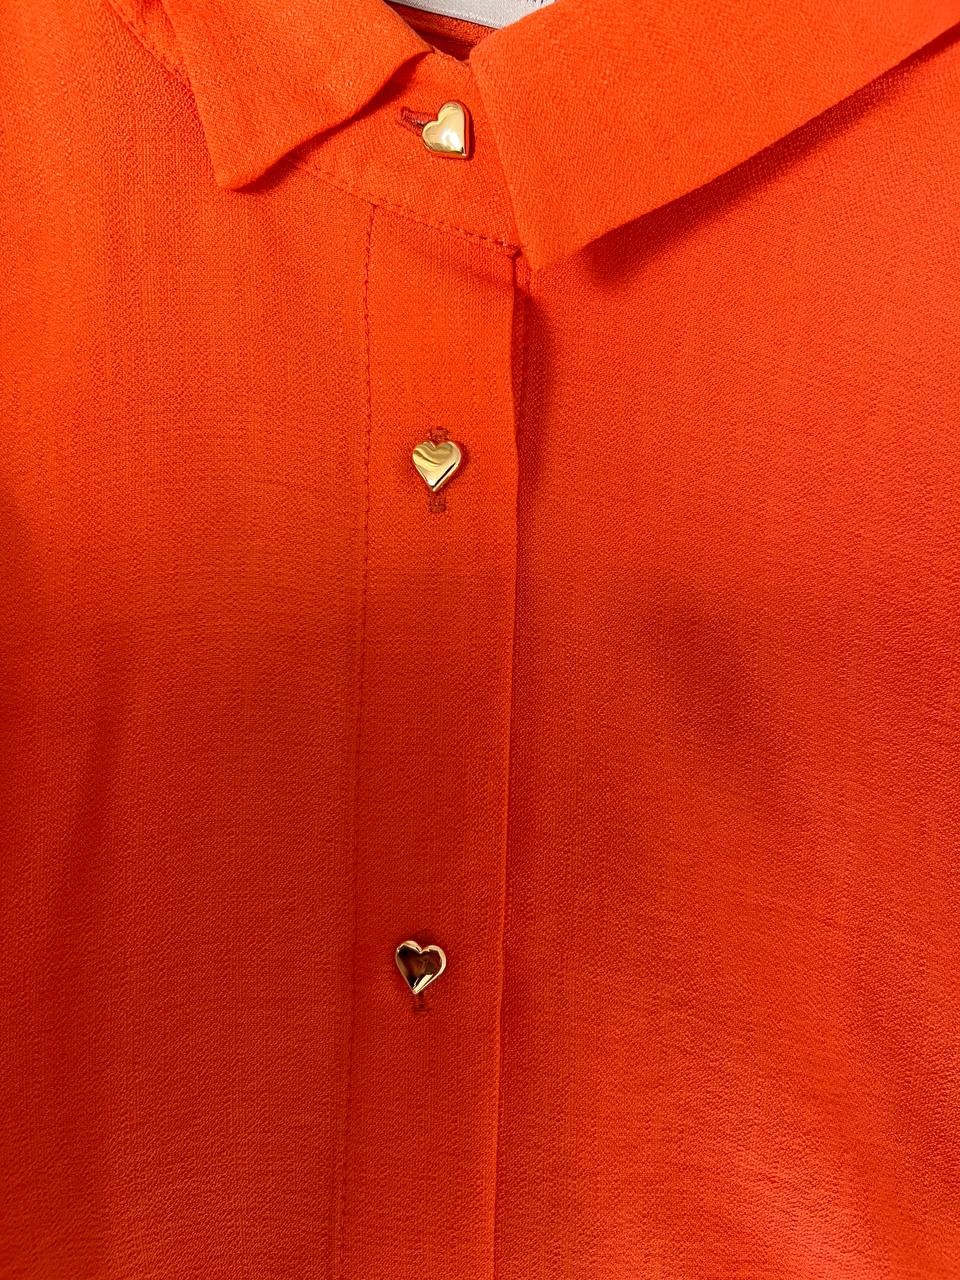 Помаранчовий костюм із пуговицями у вигляді серця.